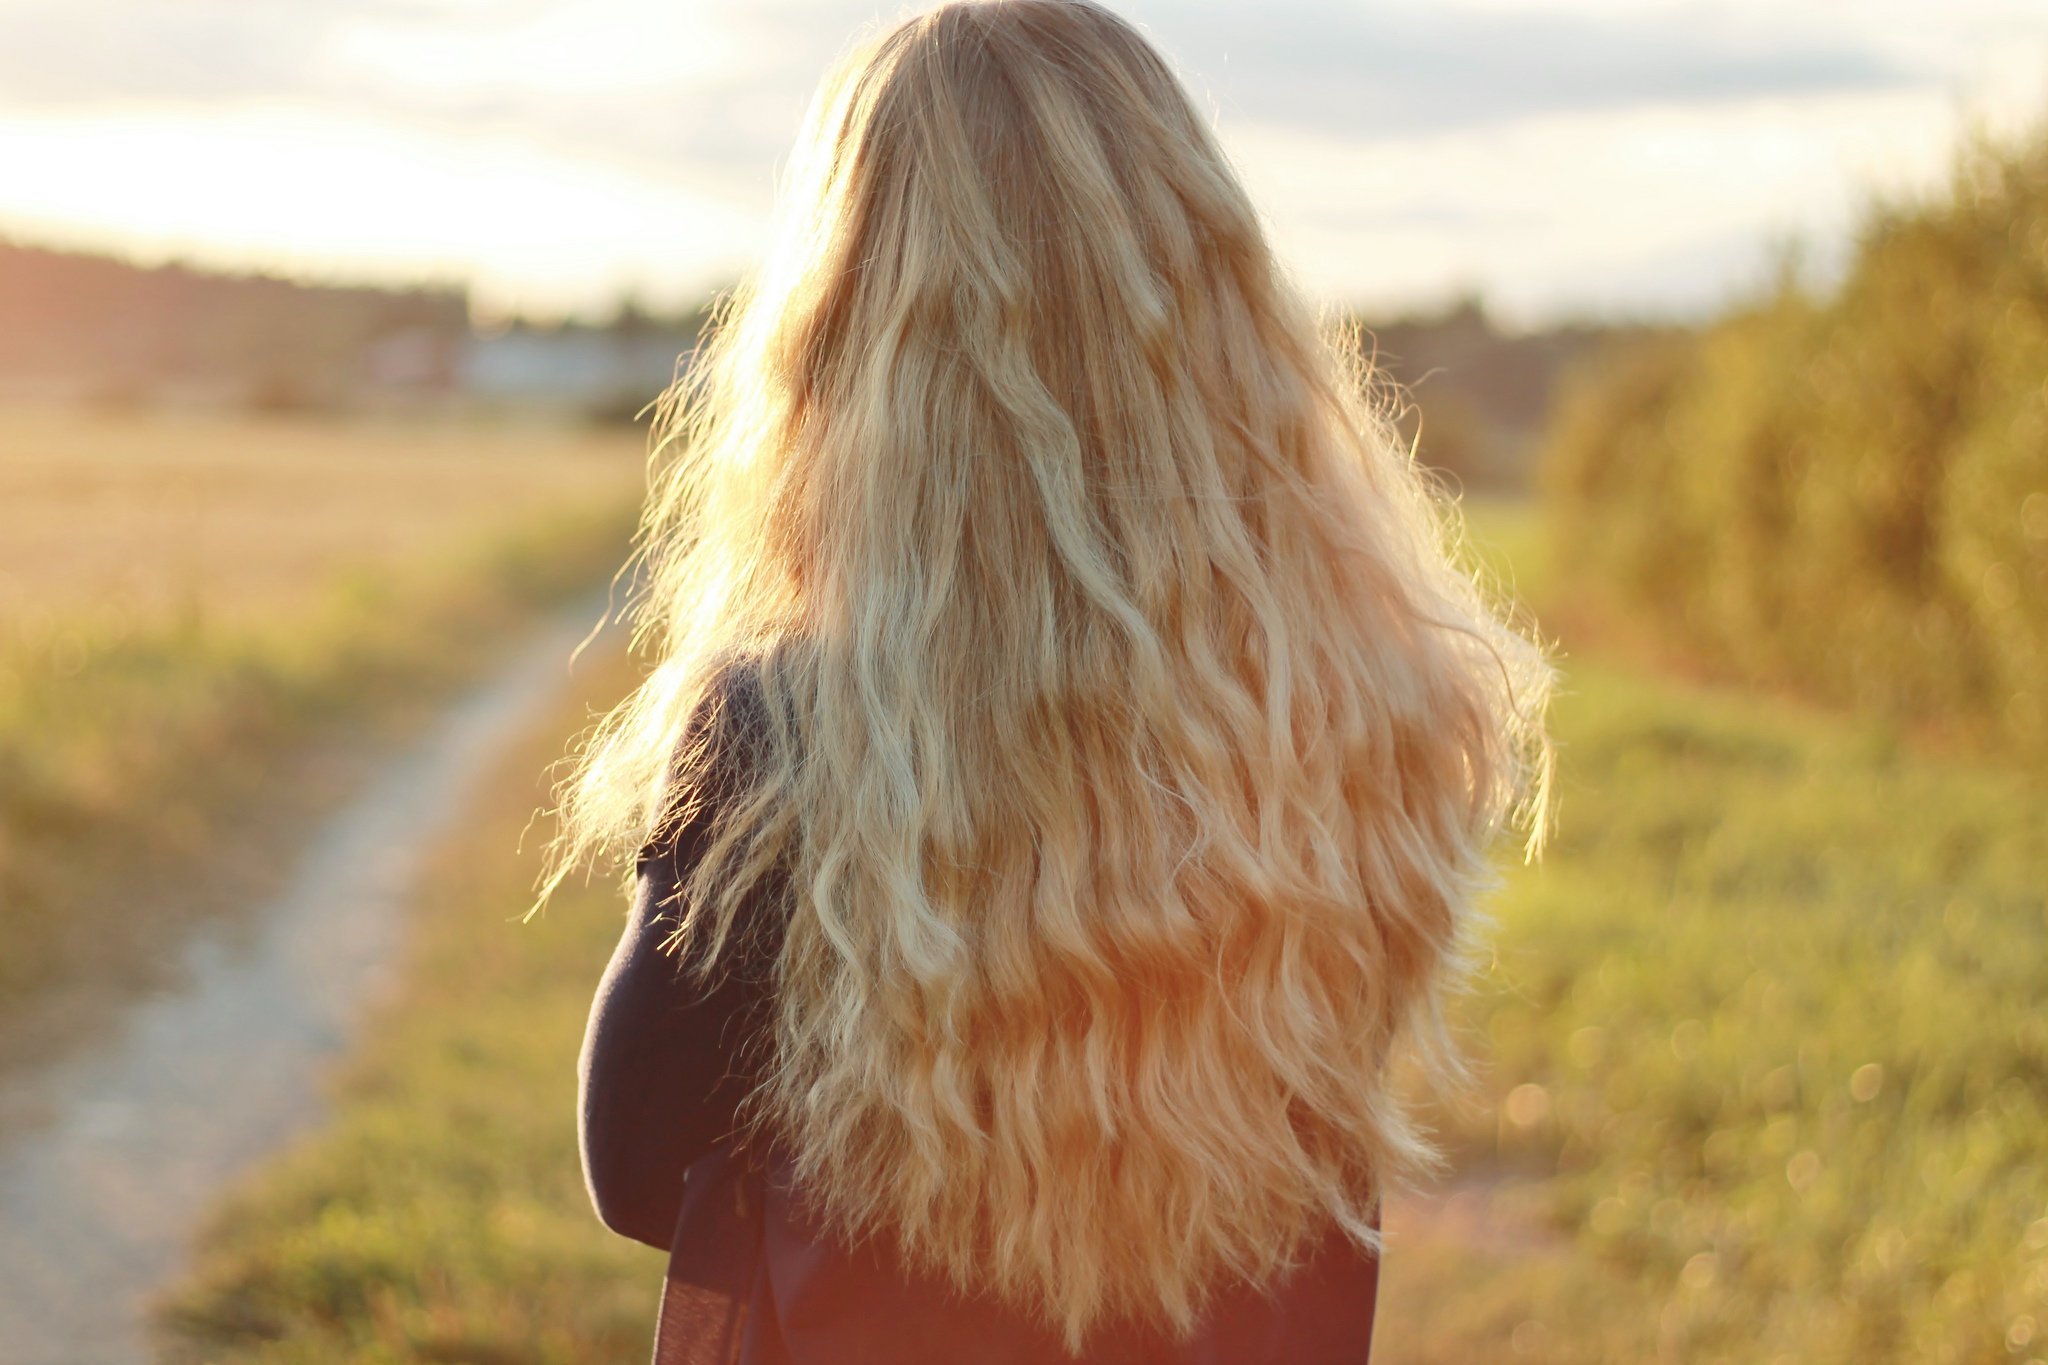 Фото на аву девушки блондинки с длинными волосами со спины